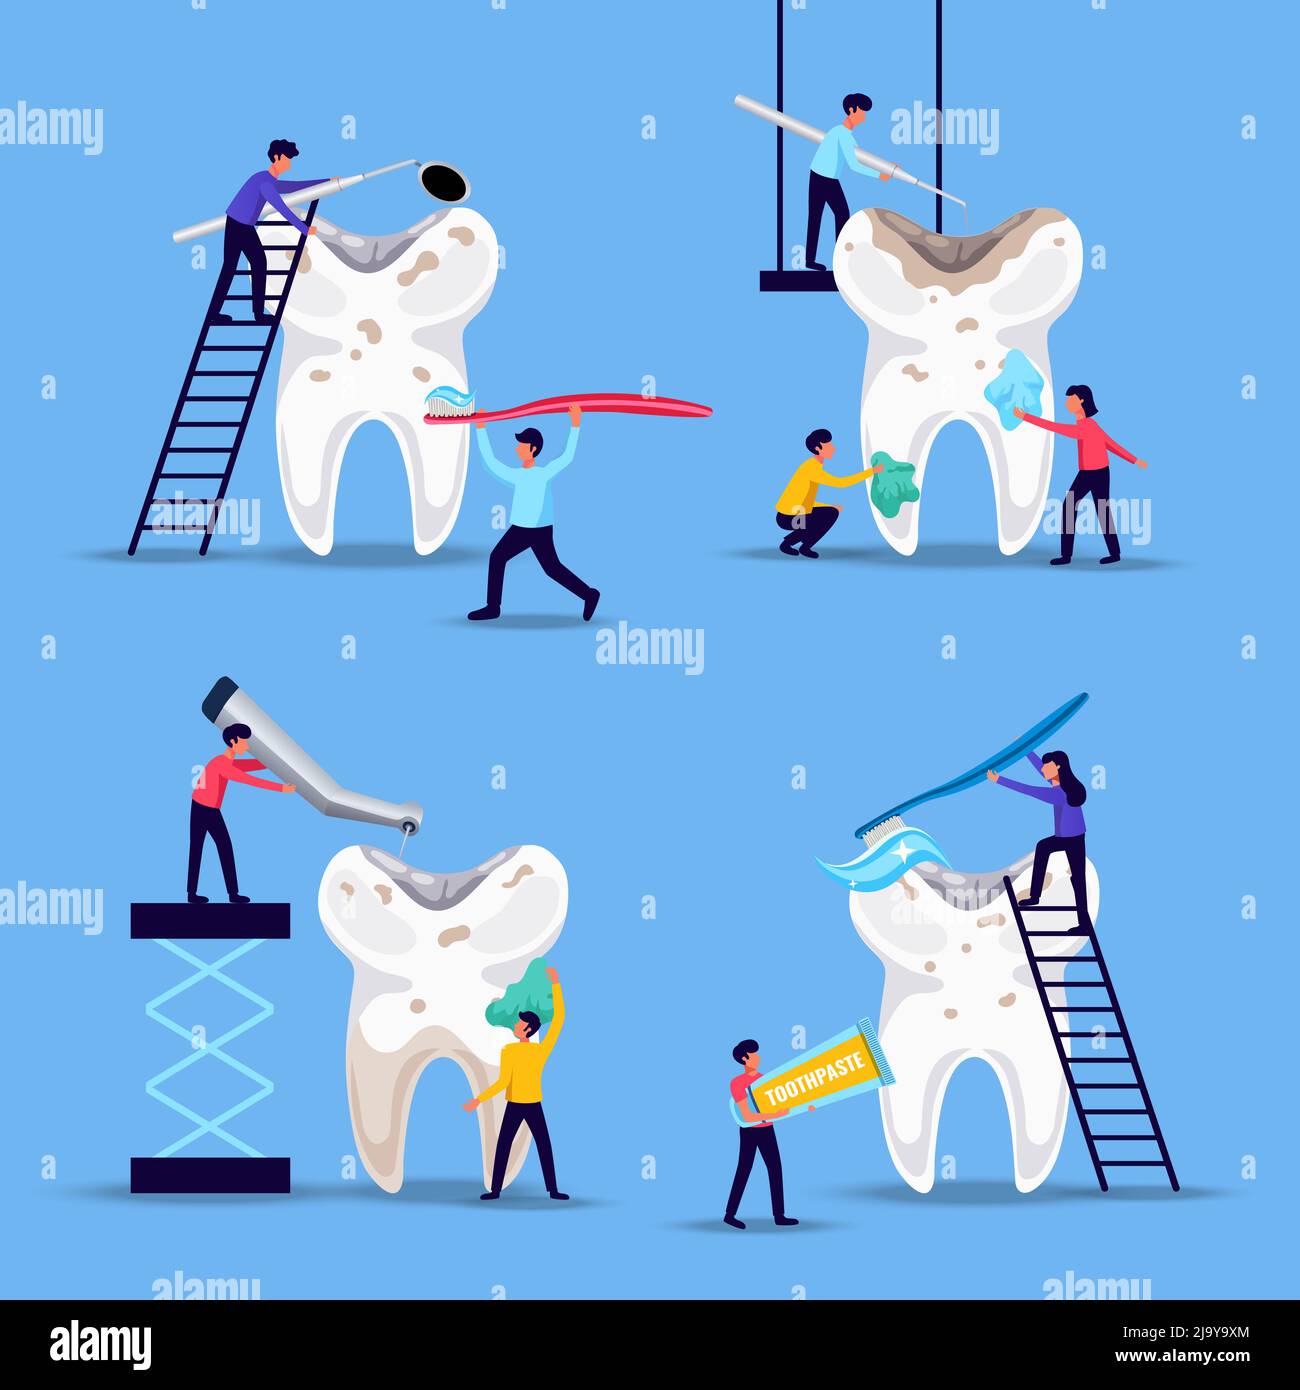 Problèmes dentaires traitement de prévention 4 compositions drôles plates avec de minuscules personnes se brossant de dents énormes fond bleu illustration vectorielle Illustration de Vecteur